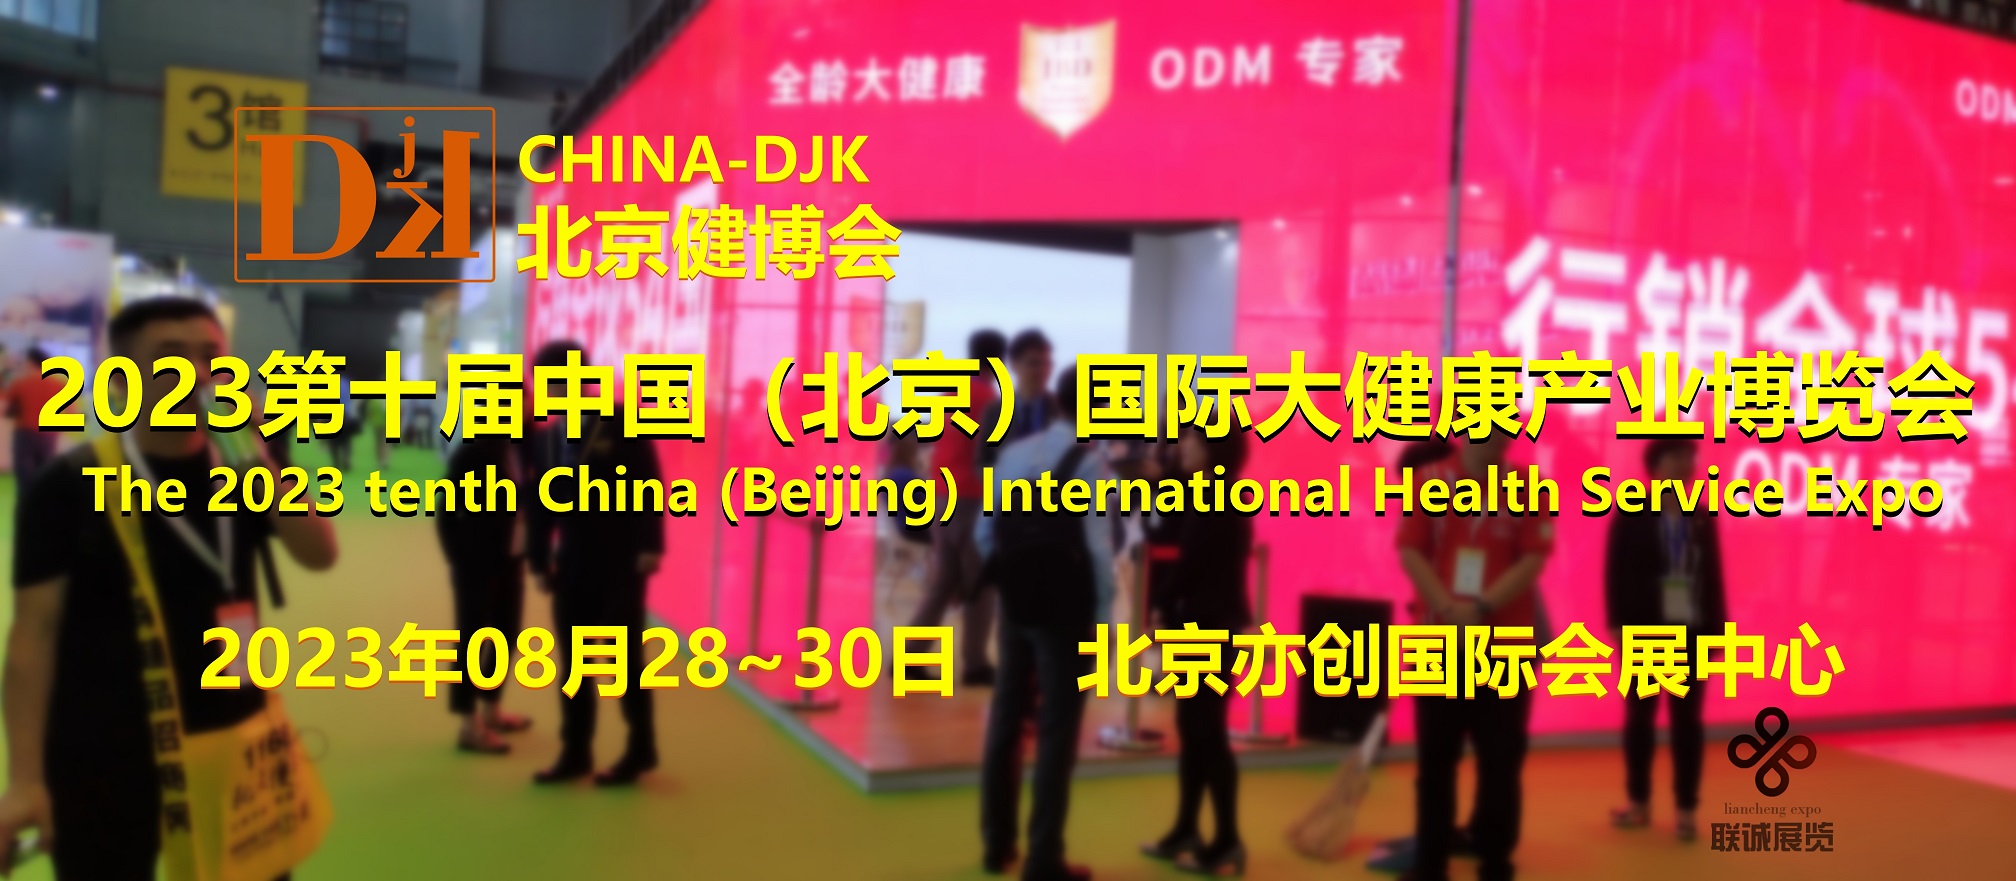 2023北京健博会（China-DJK）打造年度大健康行业必参盛会